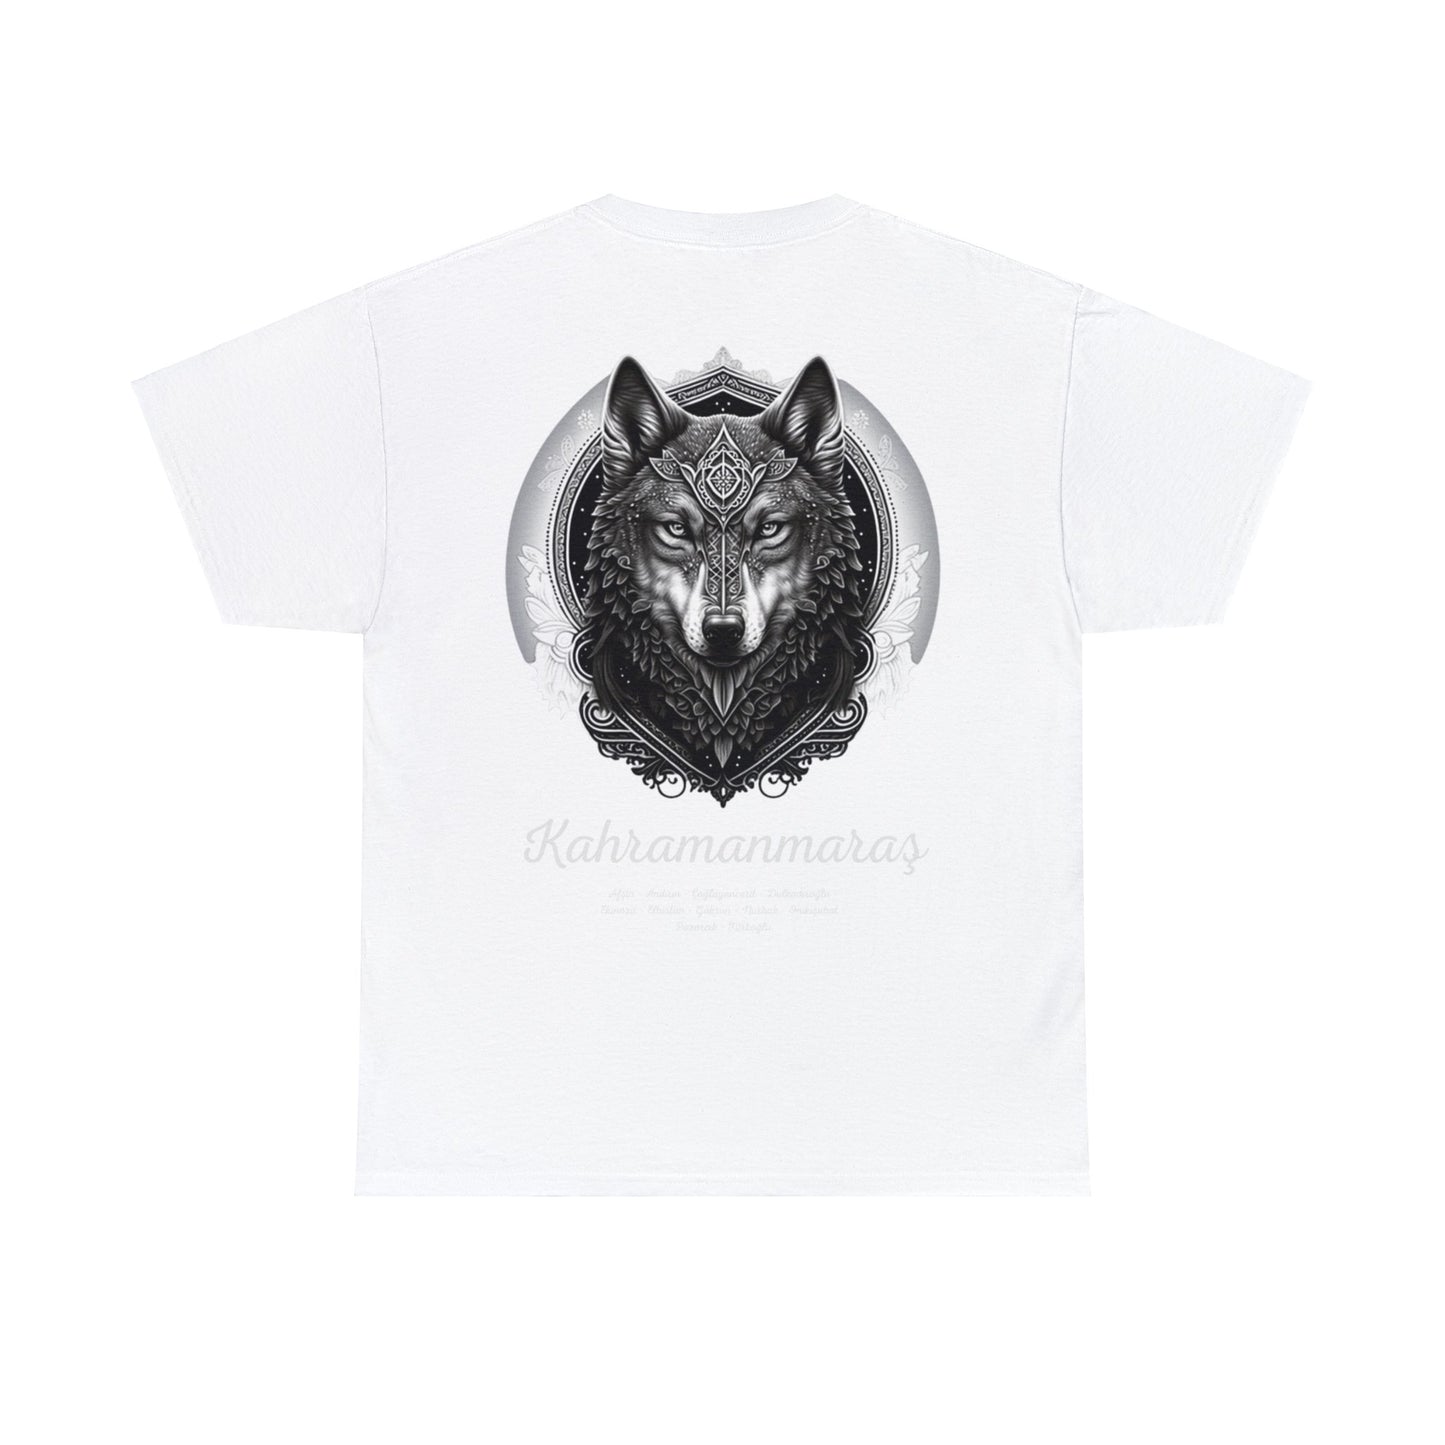 Kurt - 46 Kahramanmaraş - T-Shirt - Back Print - Black/White